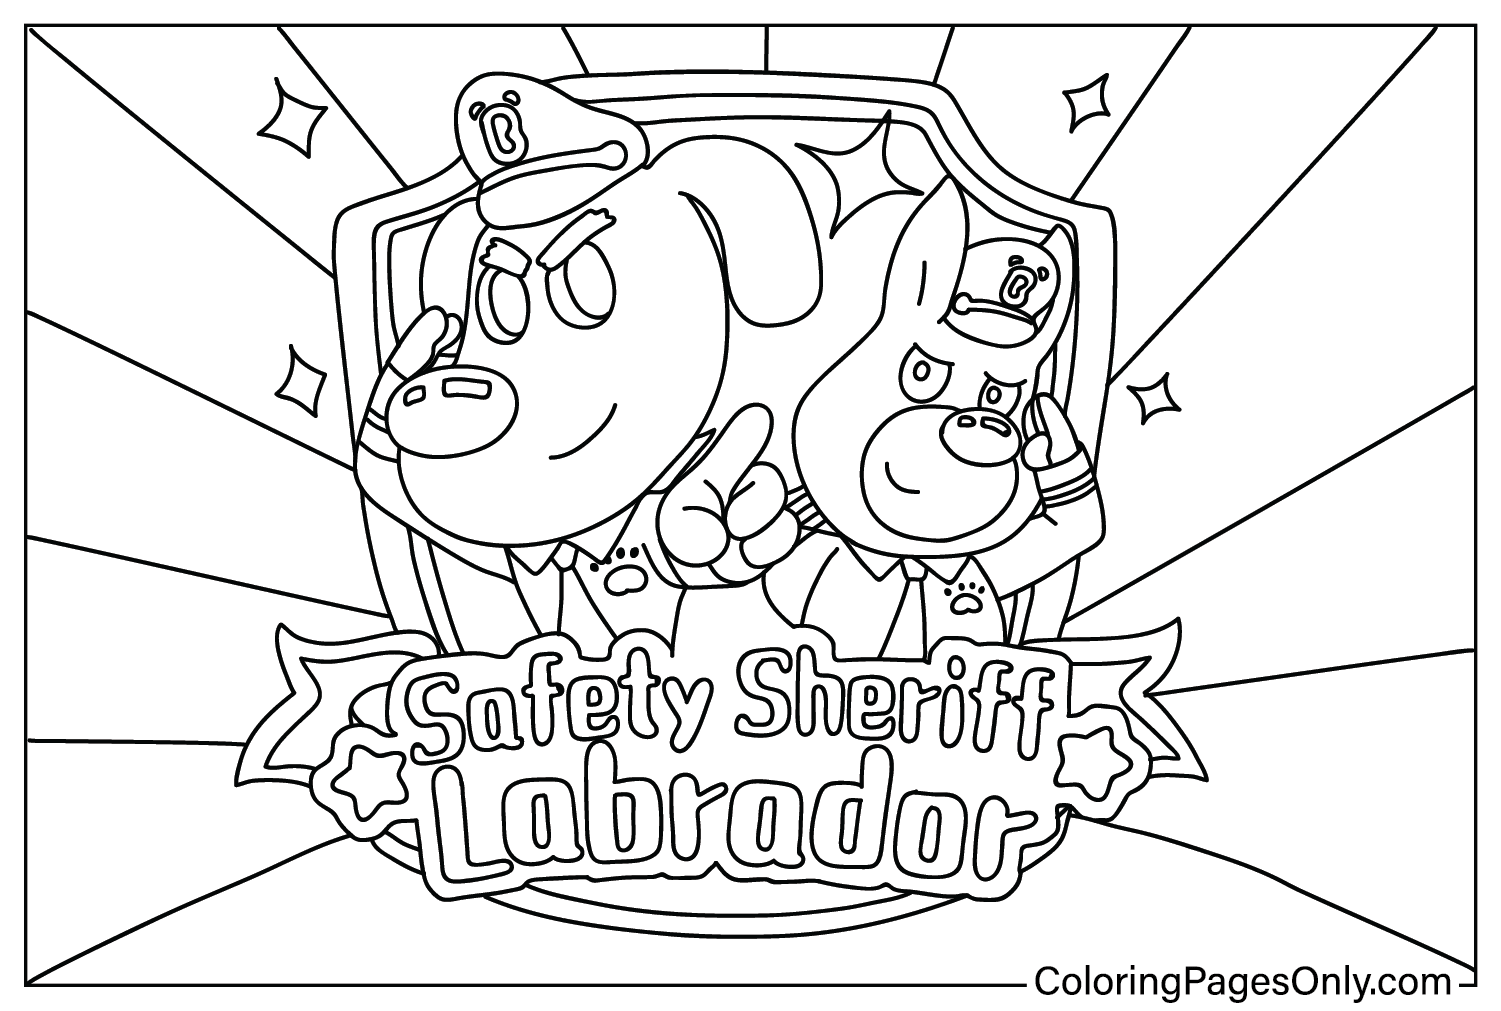 Páginas para colorear de Safety Sheriff Labrador para niños de Safety Sheriff Labrador